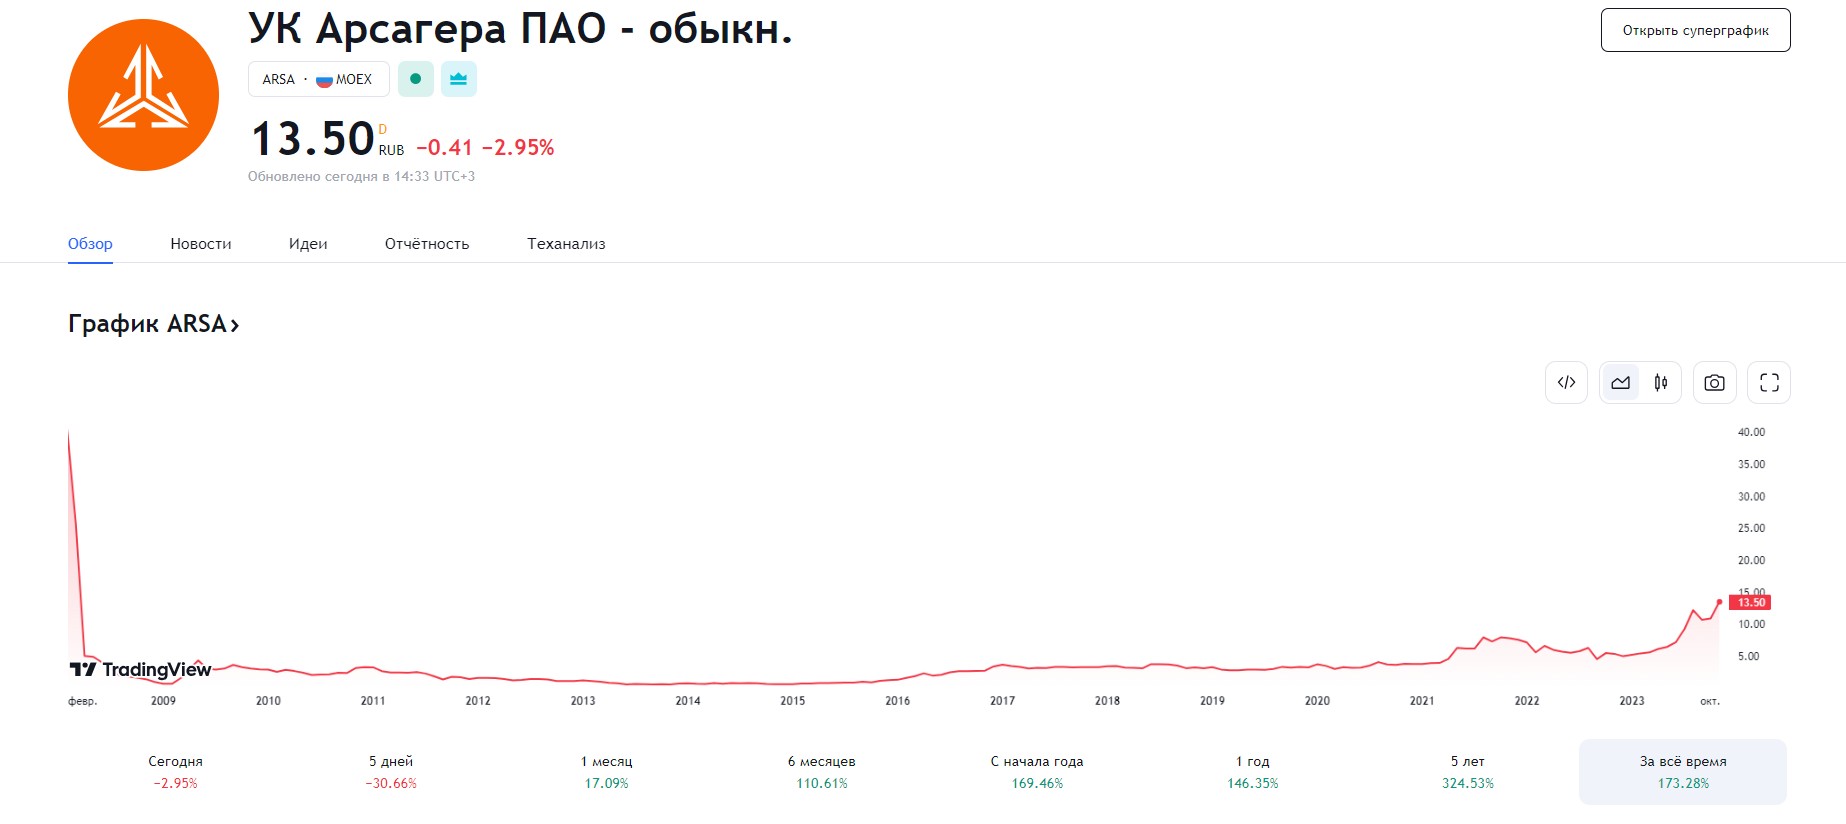 ARSA ПАО Арсагера цена акций с 2009 года